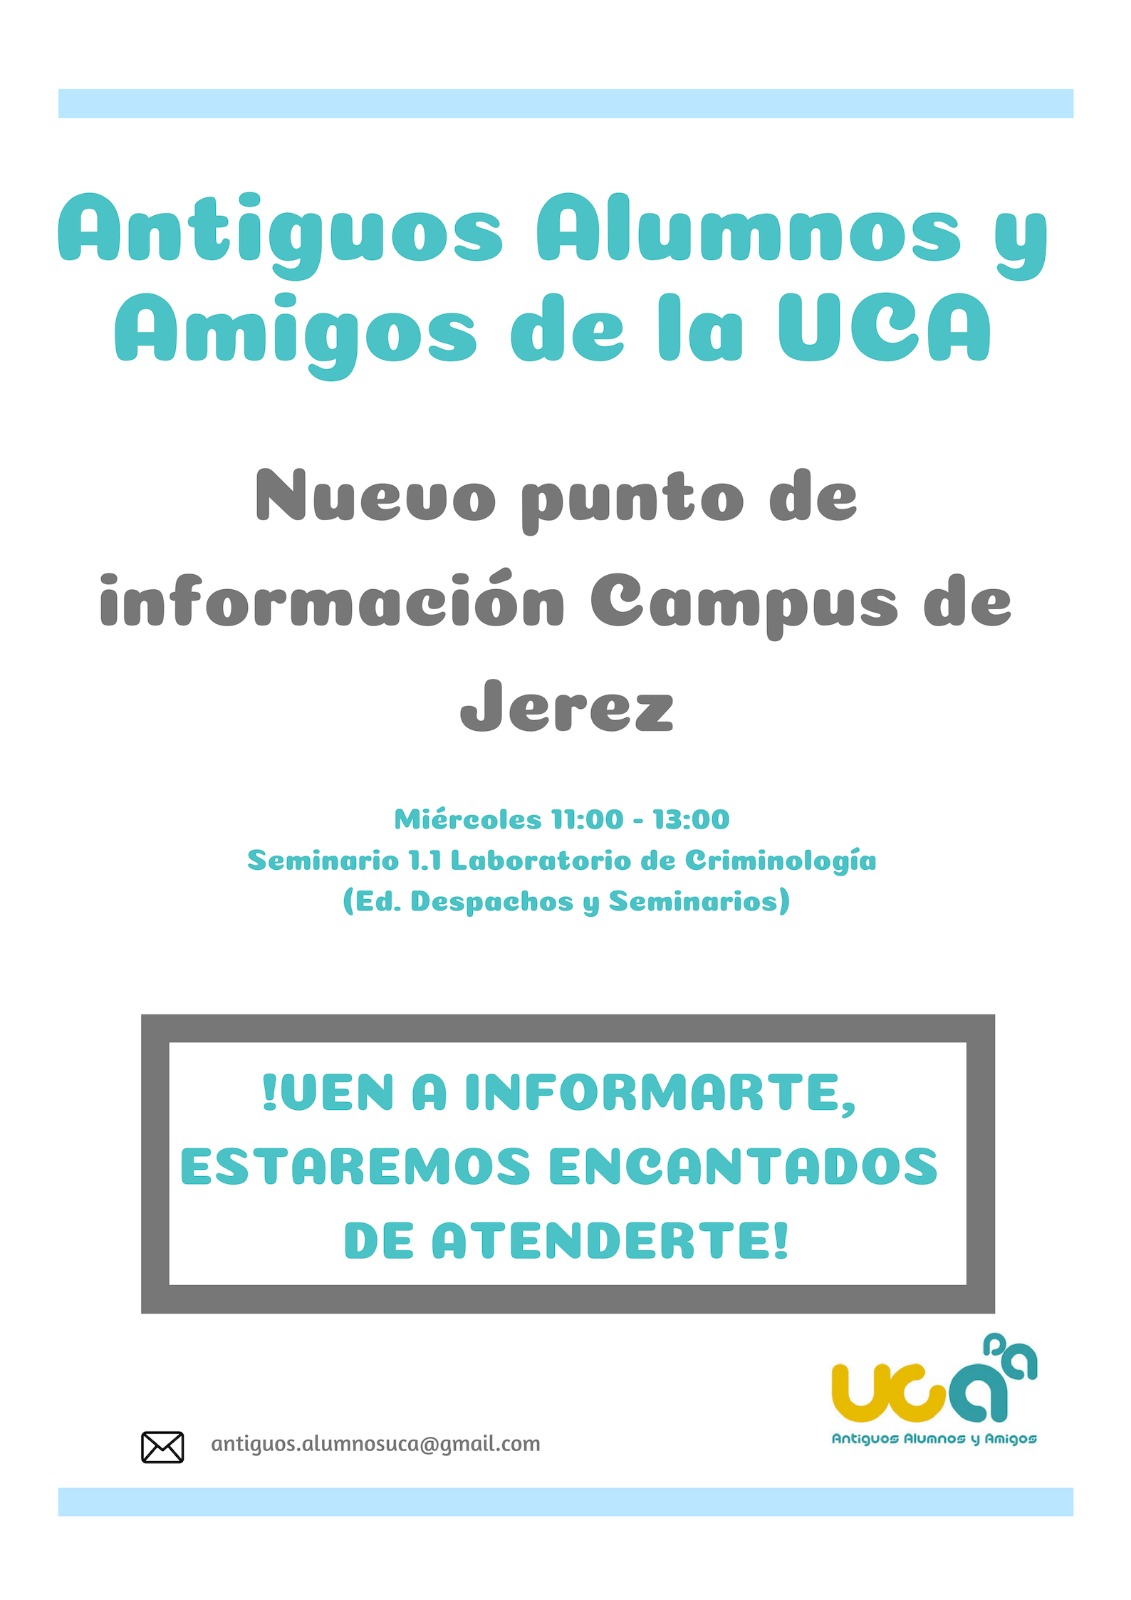 Nuevo punto de información en el Campus de Jerez